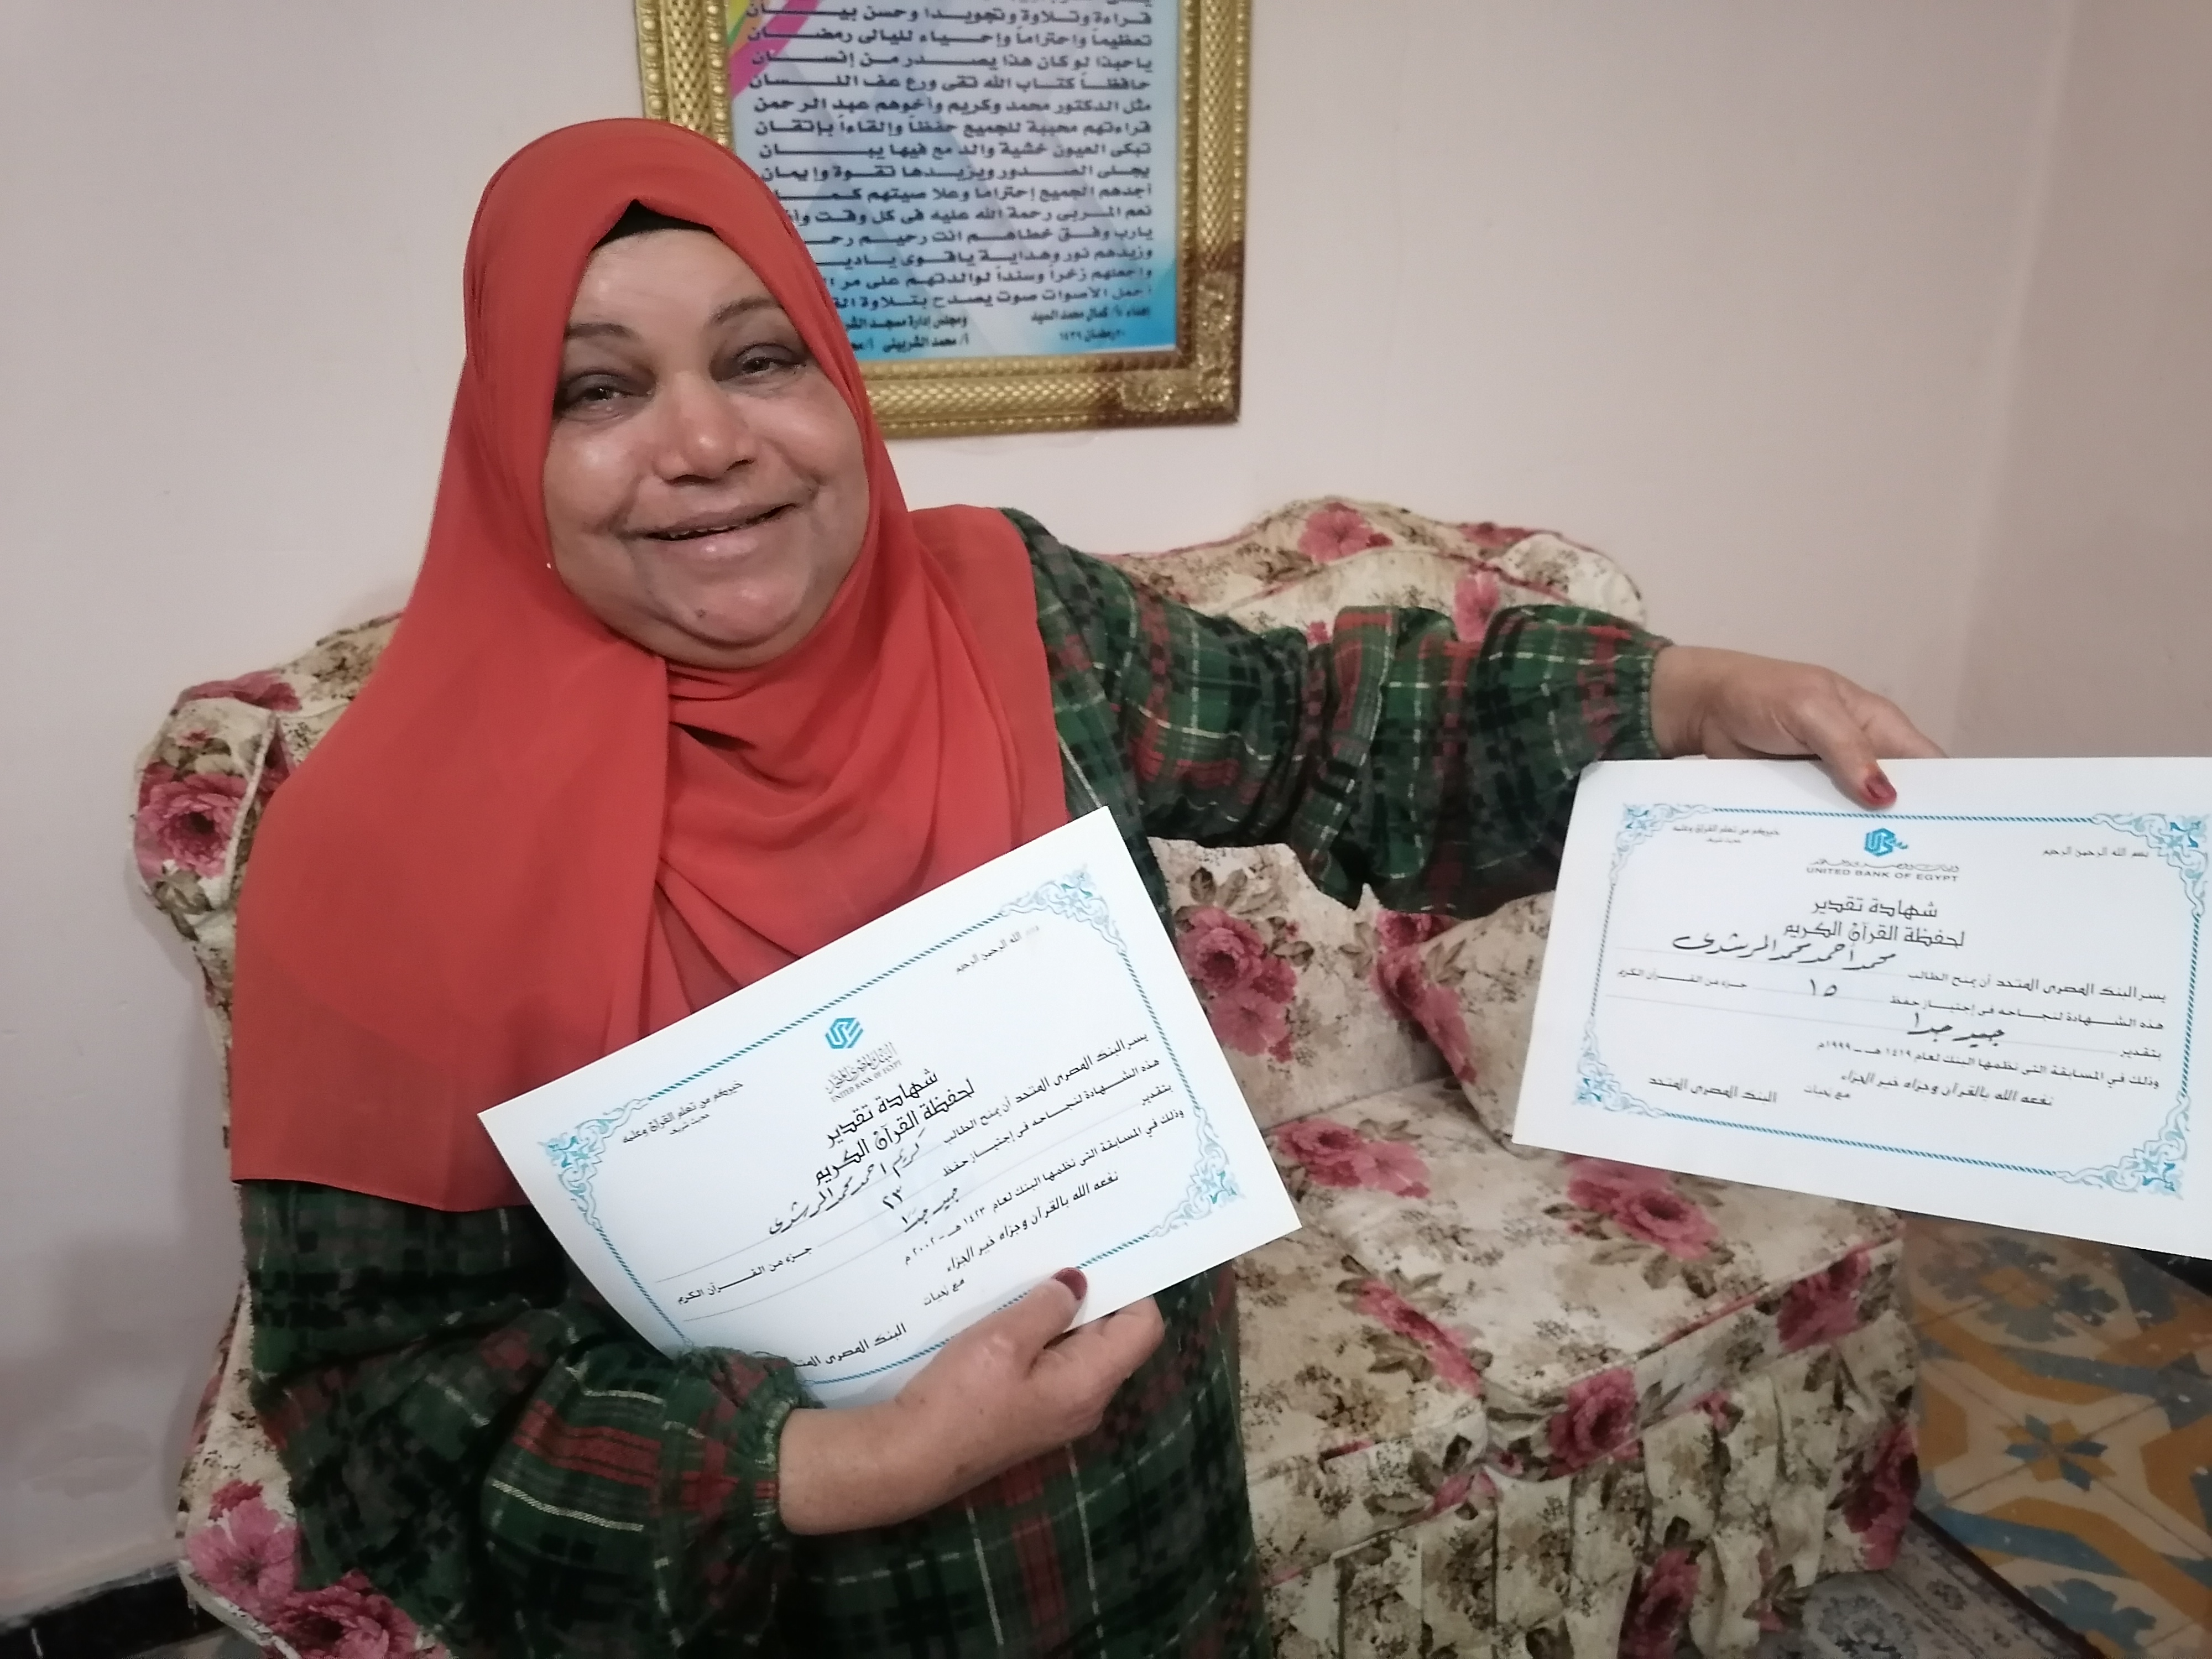 سعادة الأم مع شهادات ختم القرآن الكريم لأبناءها